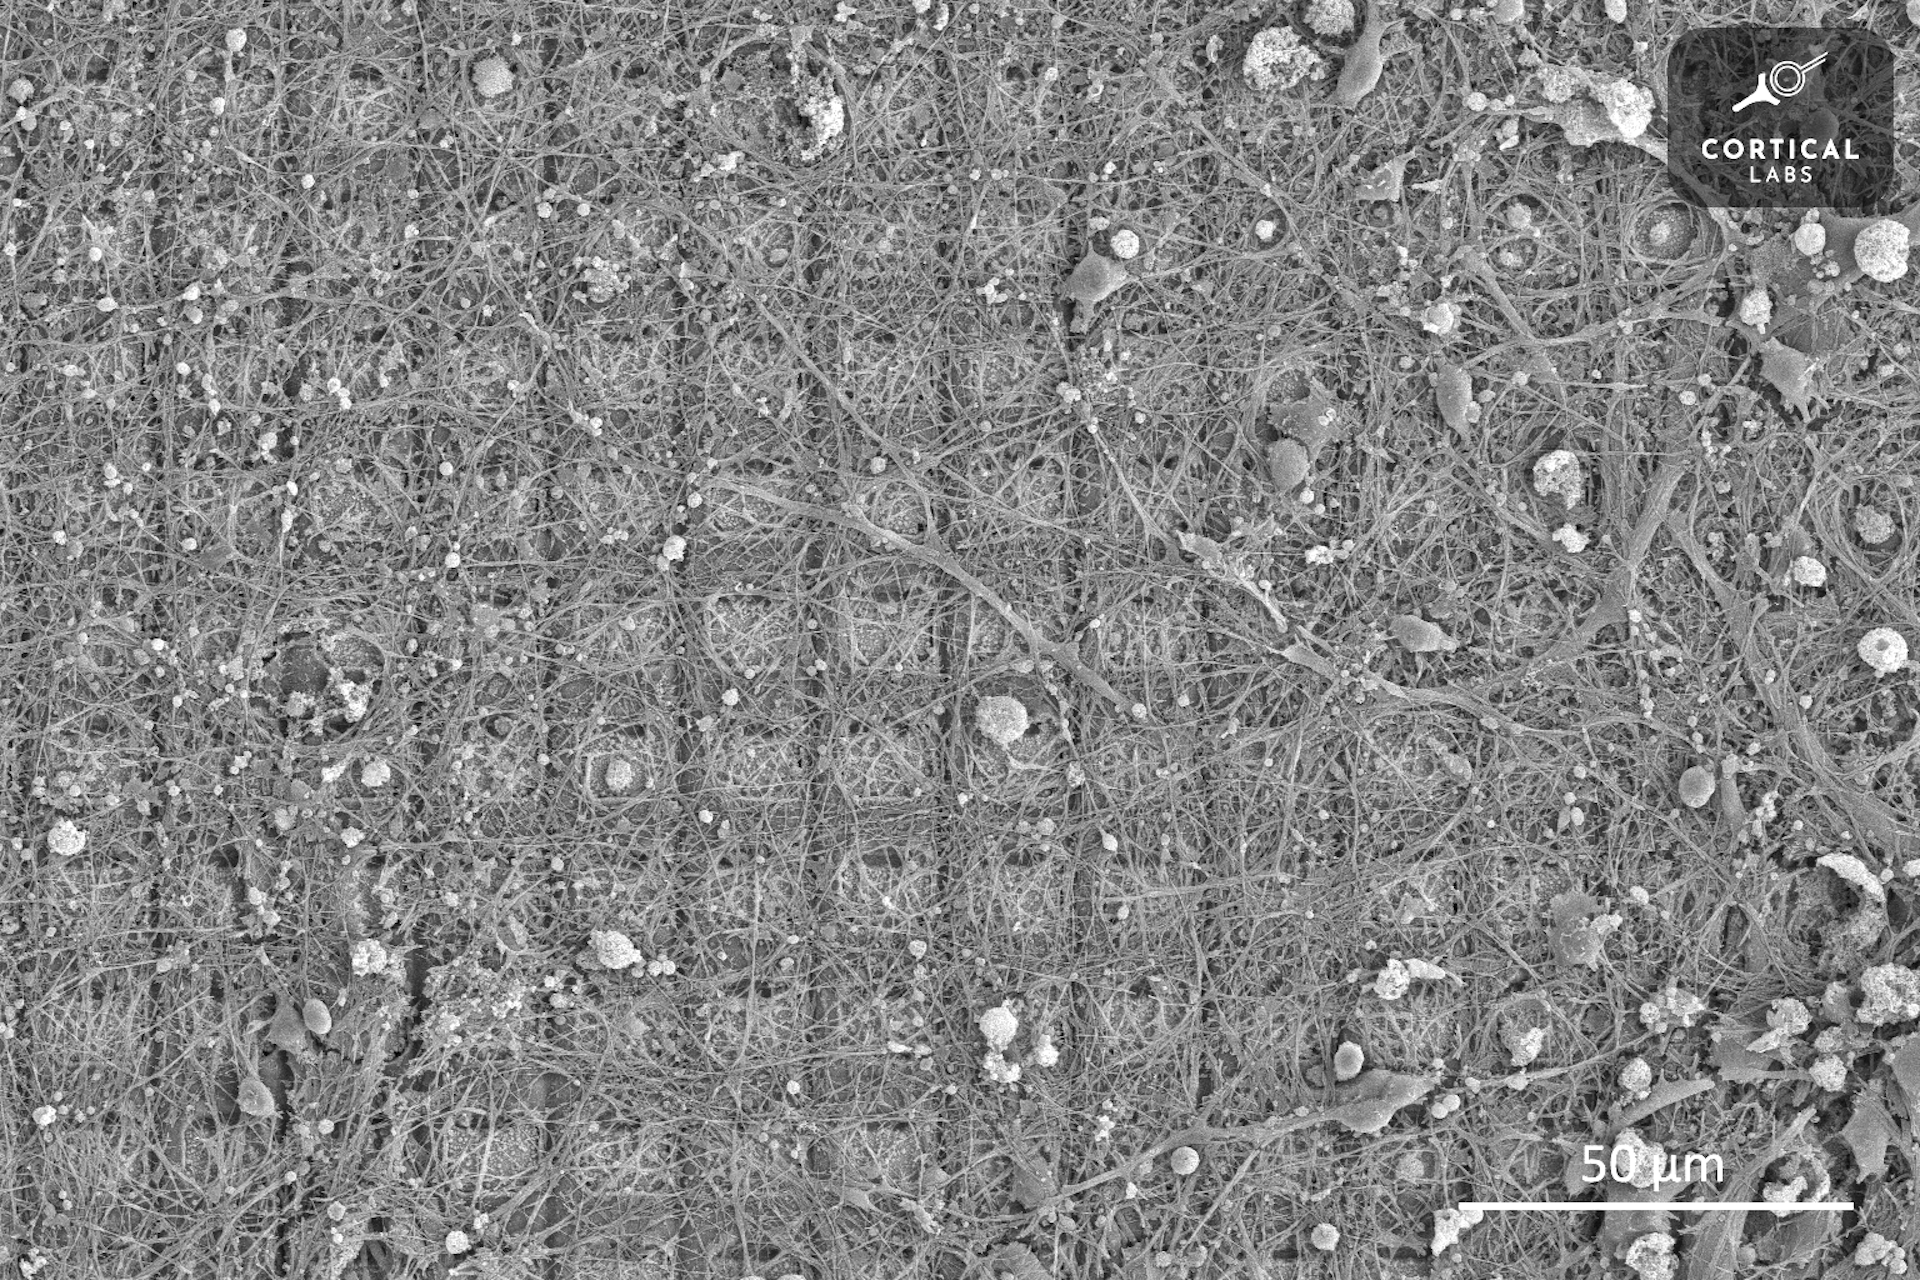 Hình ảnh qua kính hiển vi cho thấy một mạng lưới các ô vuông được bao phủ bởi sự phát triển không đều của các tế bào thần kinh dạng sợi.